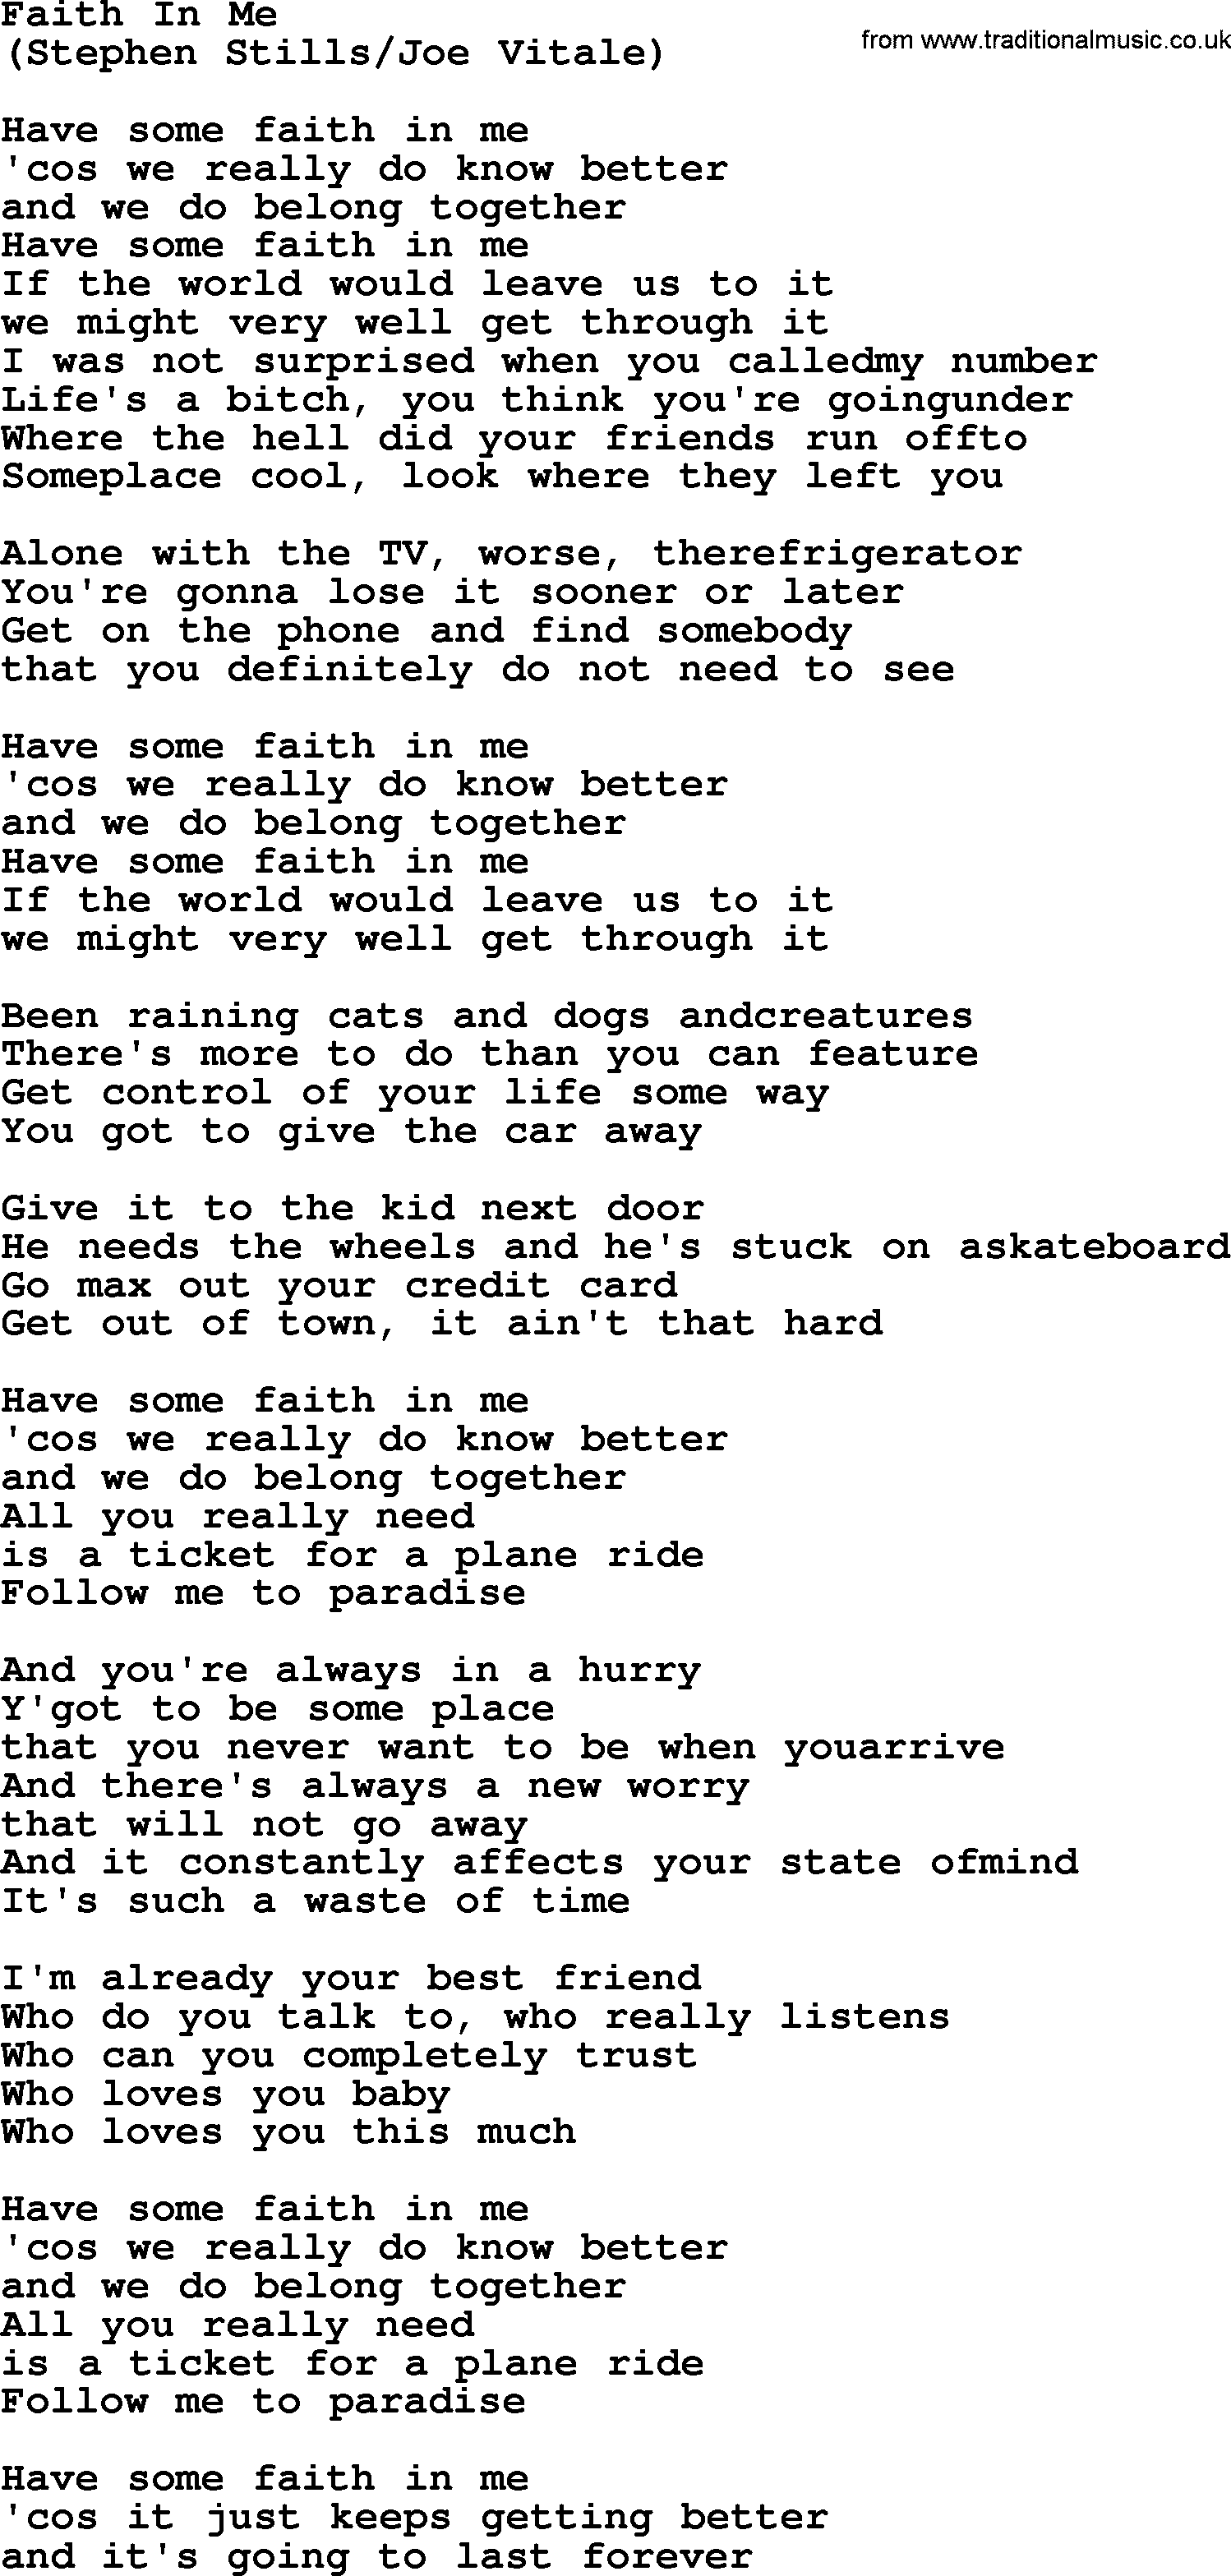 The Byrds song Faith In Me, lyrics